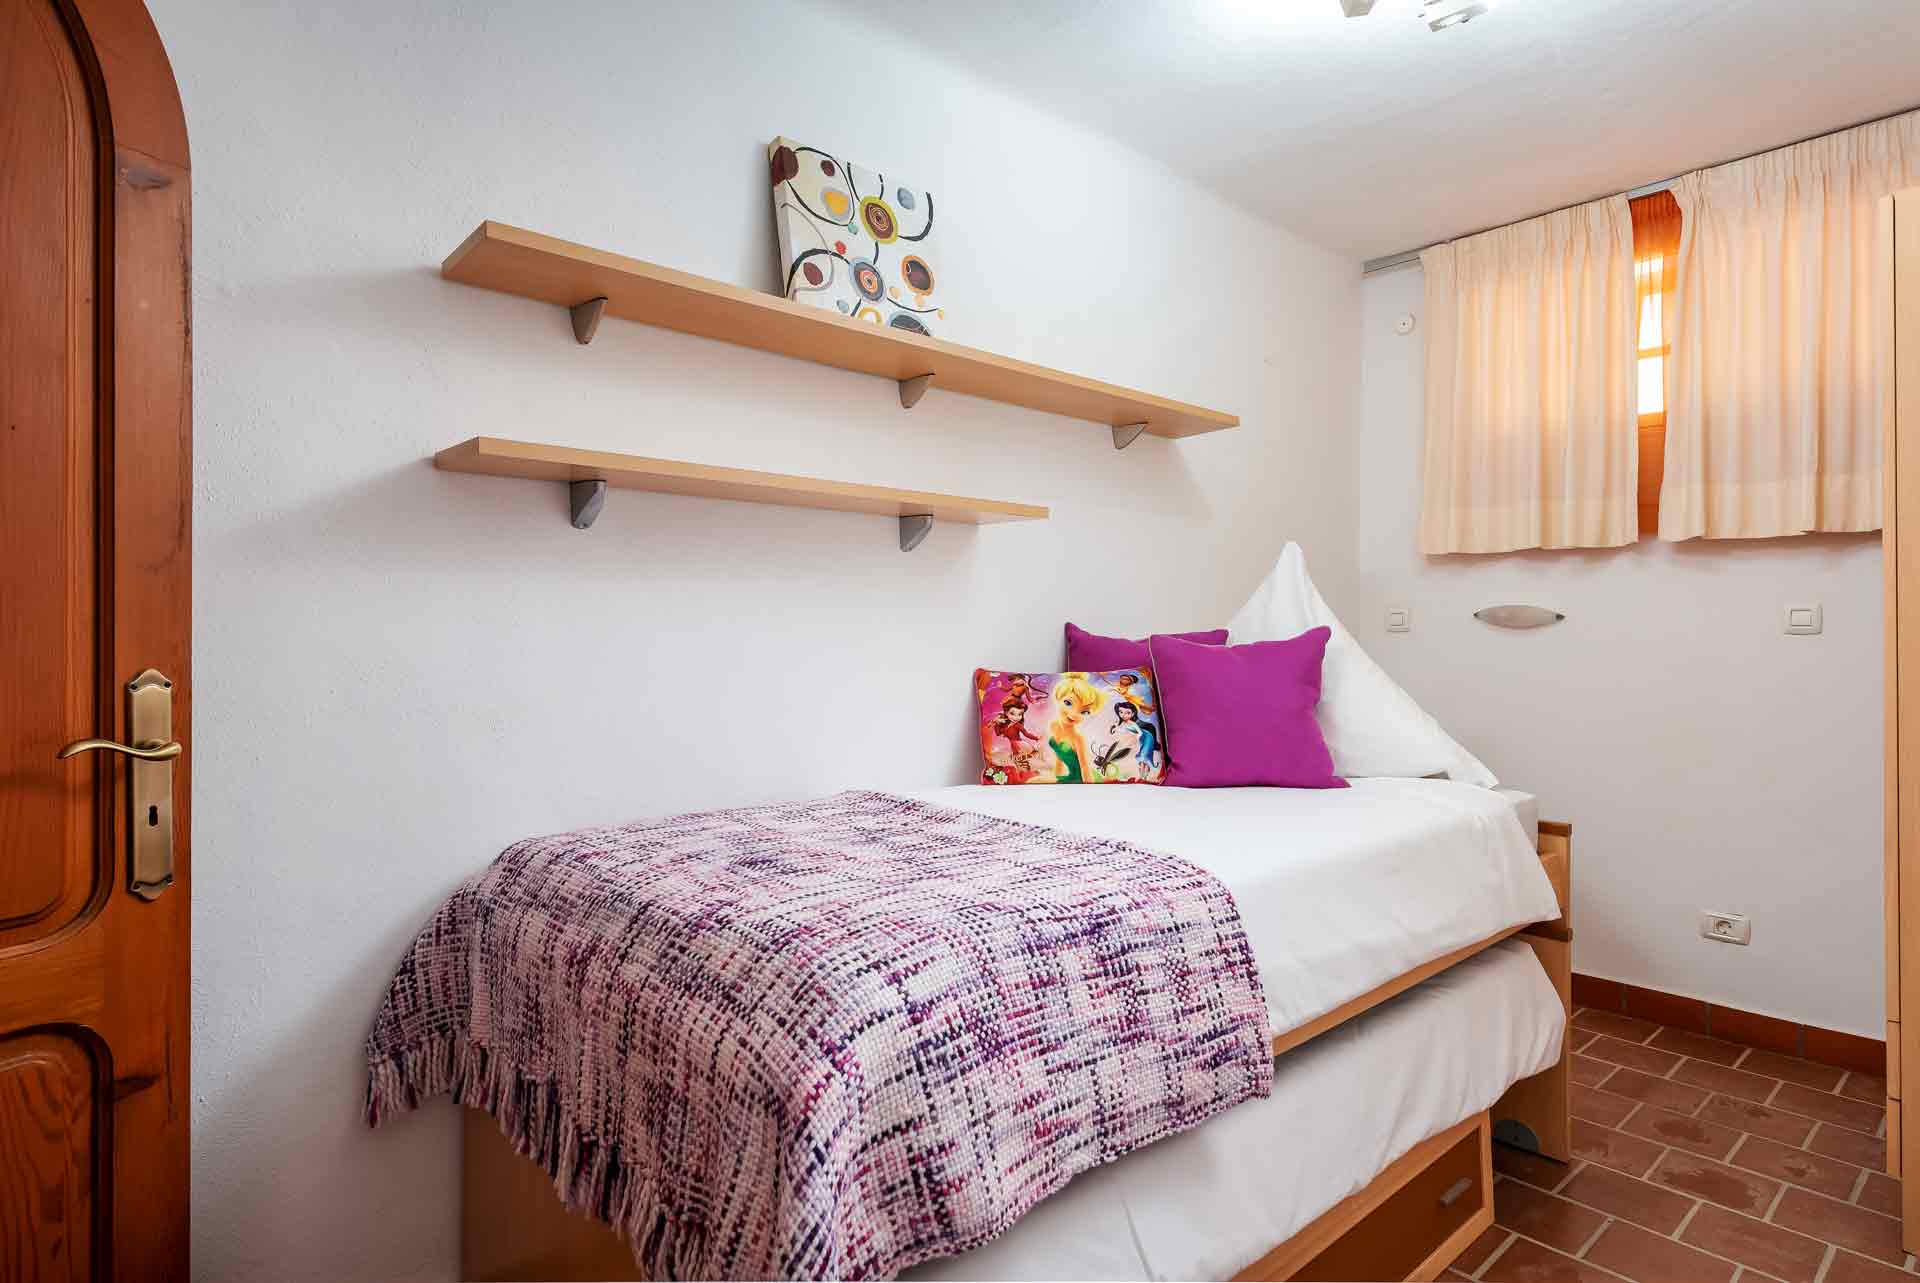 Schlafzimmer 10, einfacher Schlafraum mit Einzelbett, siehe Grundriss Untergeschoss 